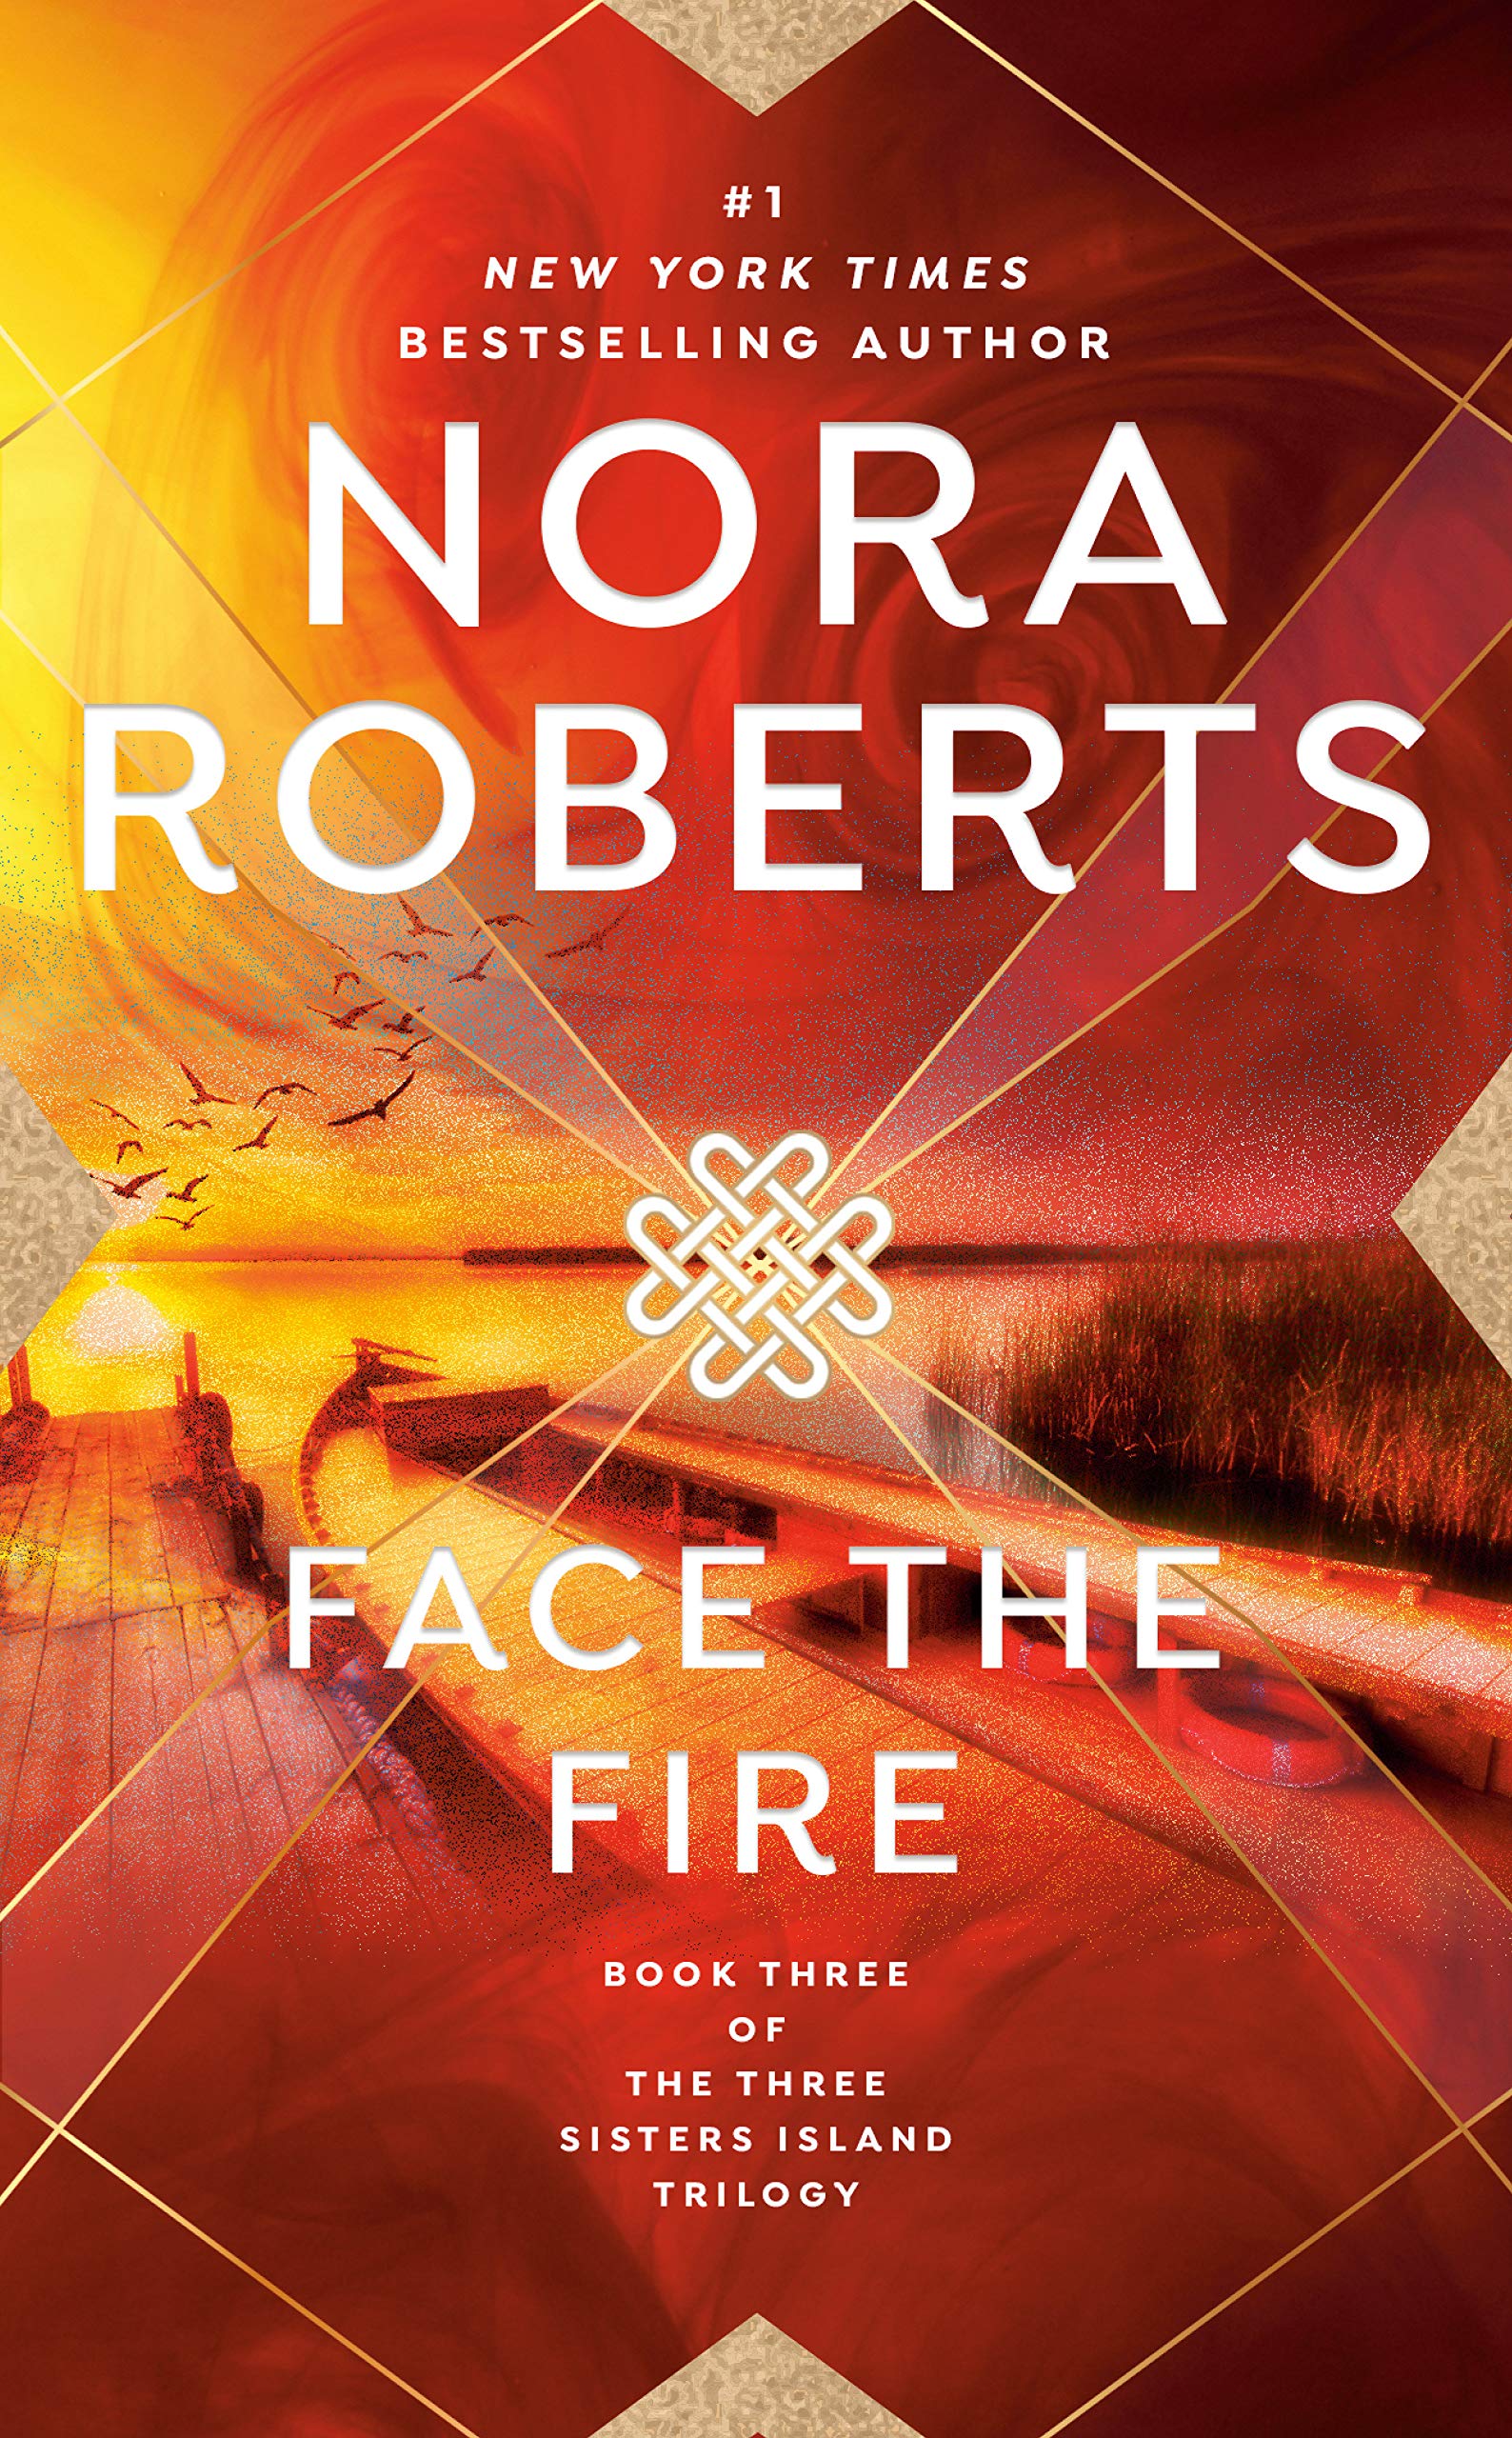 Livre ISBN 051513287X Face The Fire (Nora Roberts)